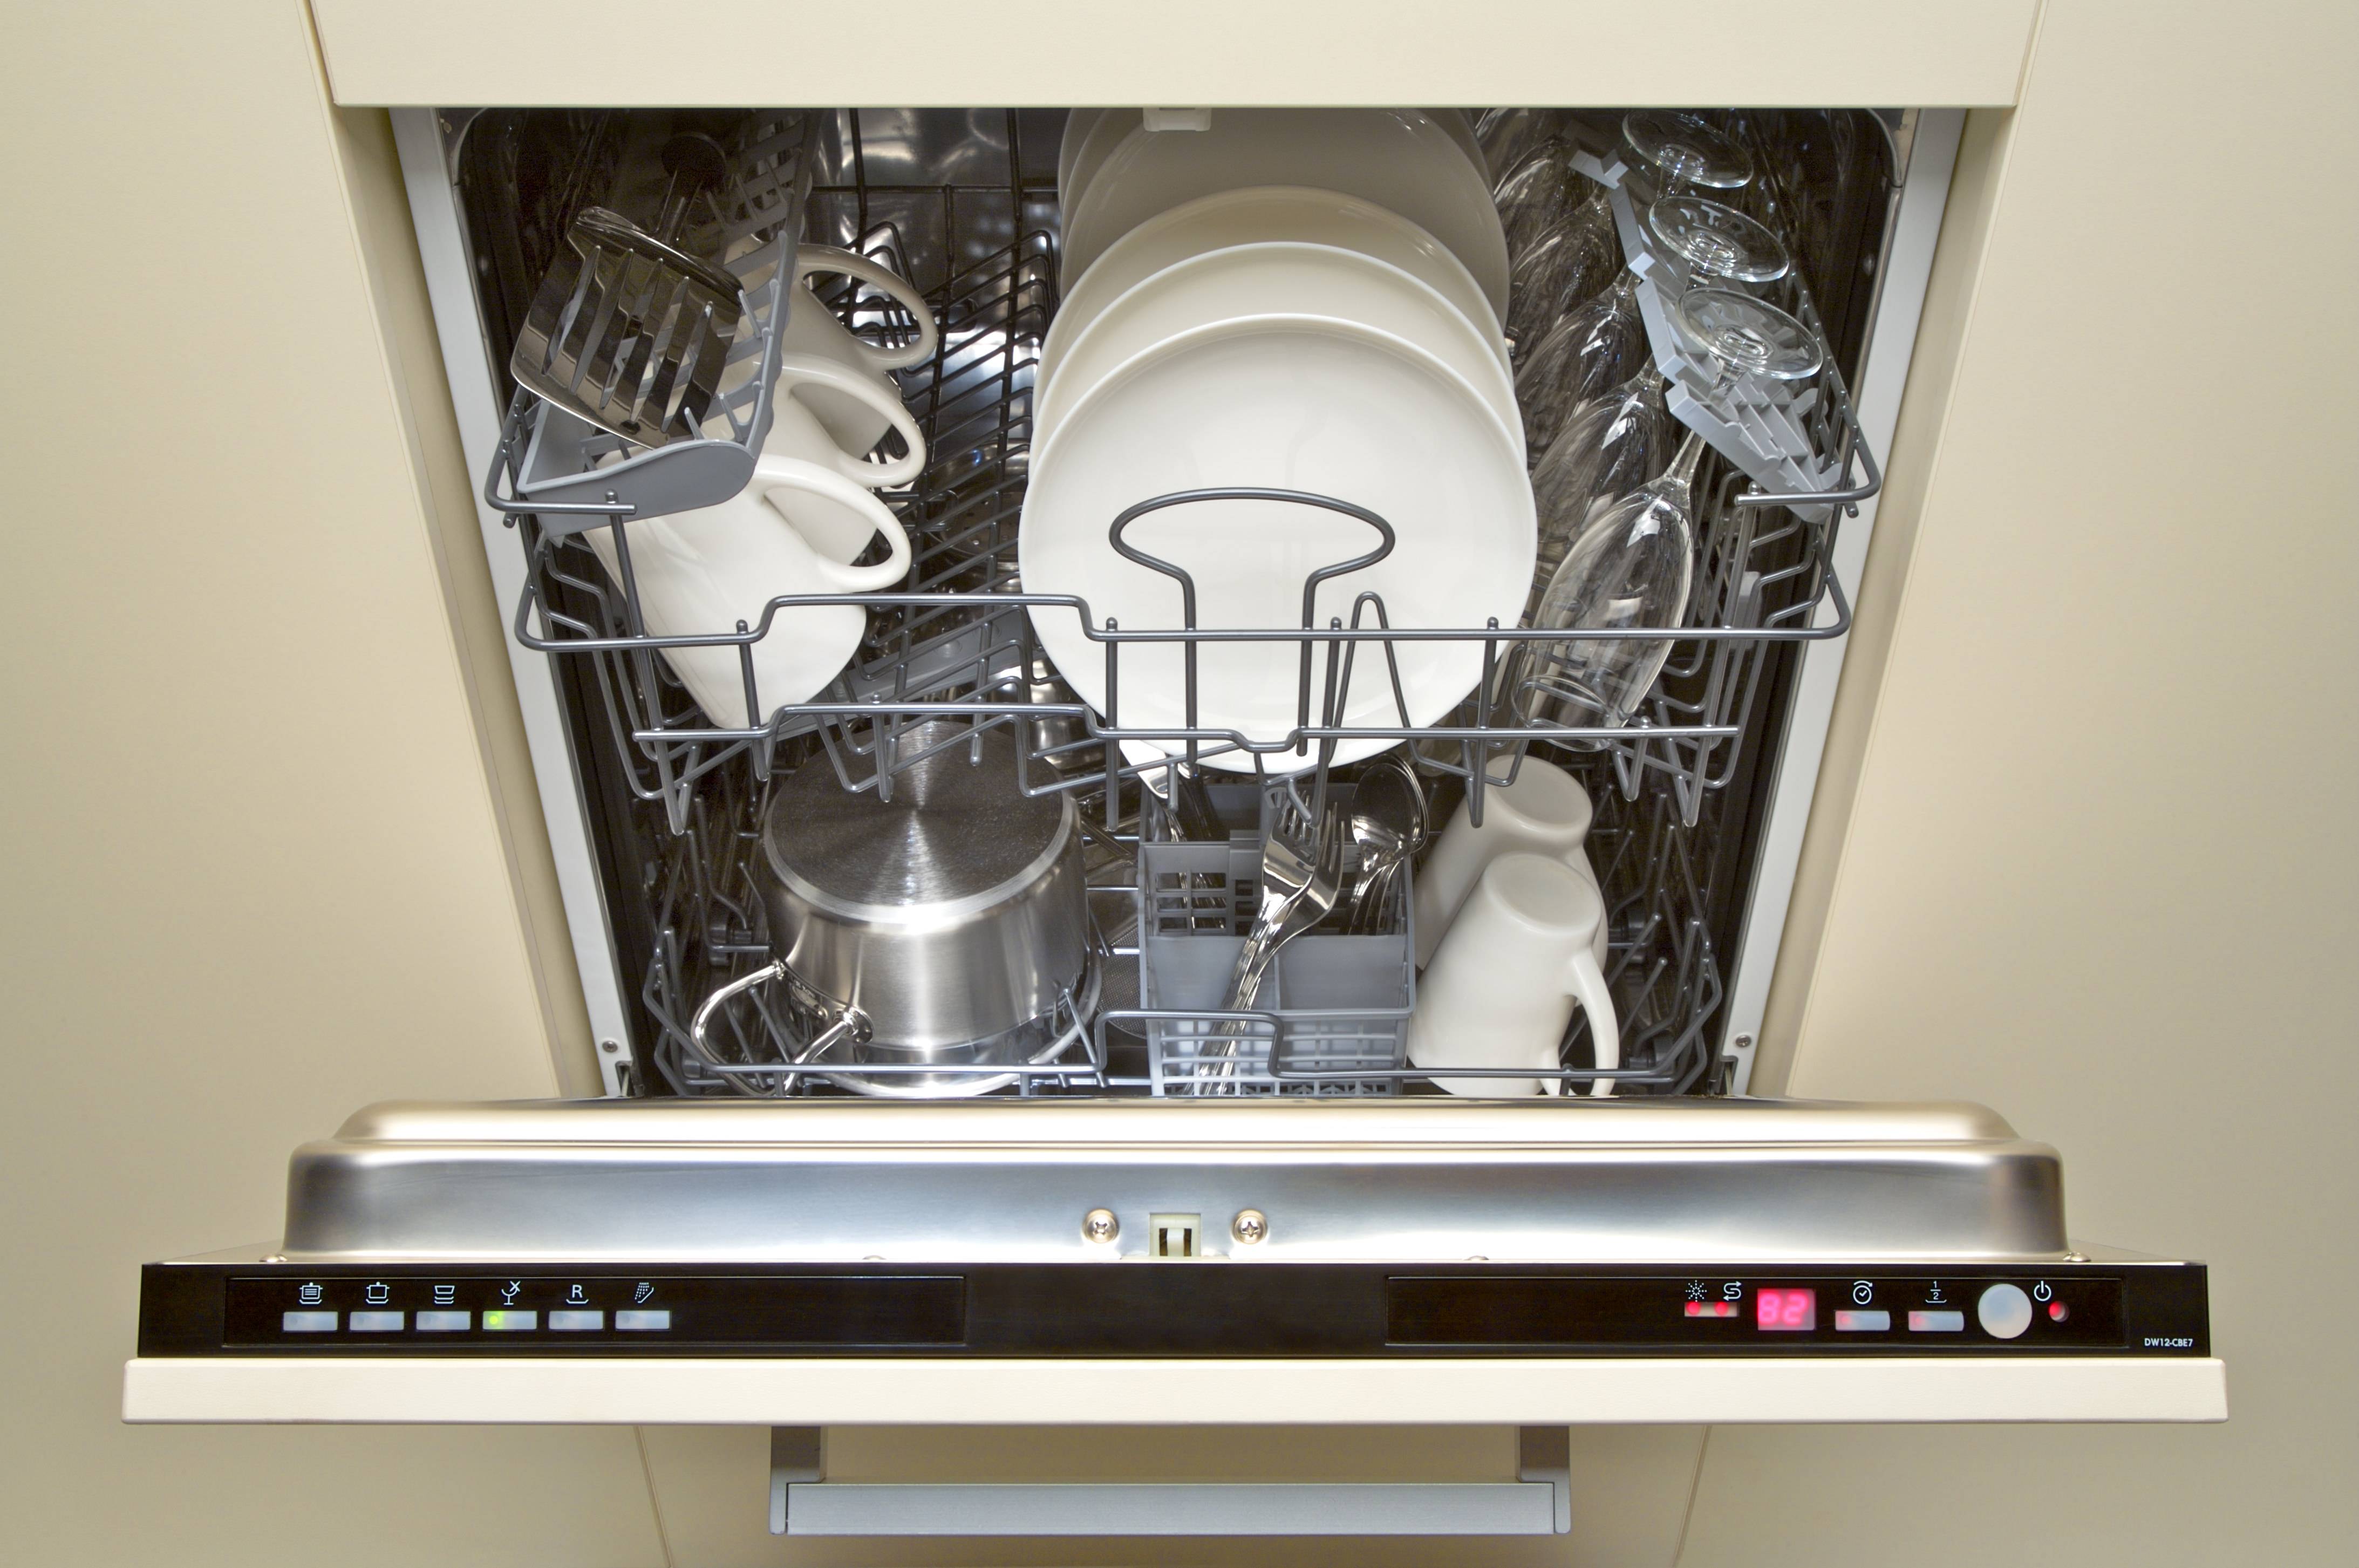 Посудомоечная машина 60 см встраиваемая рейтинг лучших. Посудомоечная машина Флавия. Посудомоечная машина Kuppersberg GSM 6072 нержавеющая сталь. Gv663c61 посудомойка. Посудомоечная машина Bosch 60 не встраиваемая.